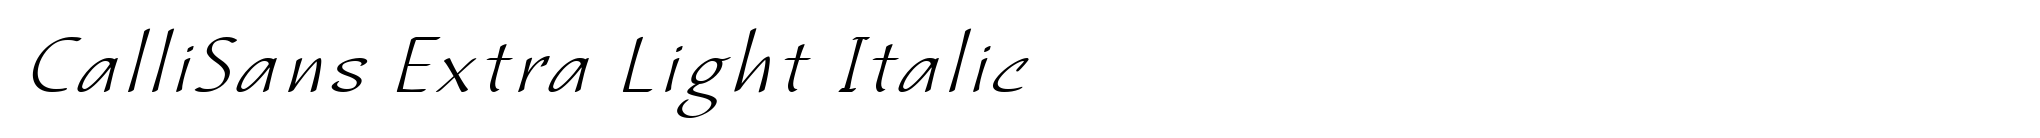 CalliSans Extra Light Italic image